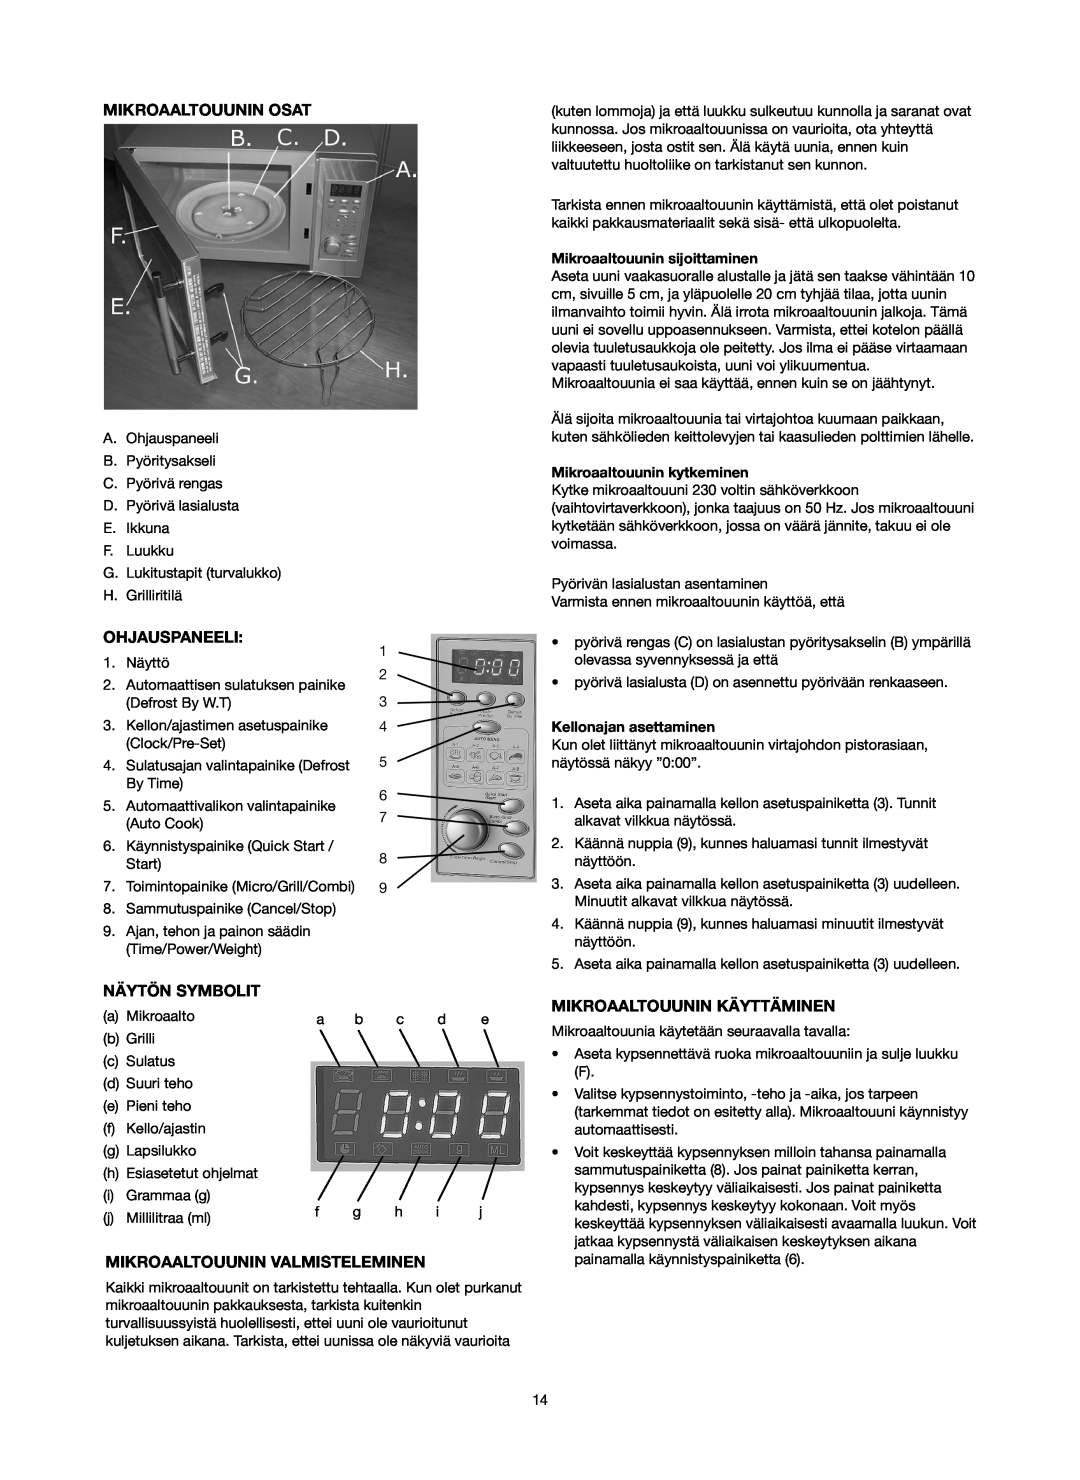 Melissa 753-093 manual Mikroaaltouunin Osat, Ohjauspaneeli, Näytön Symbolit, Mikroaaltouunin Valmisteleminen 